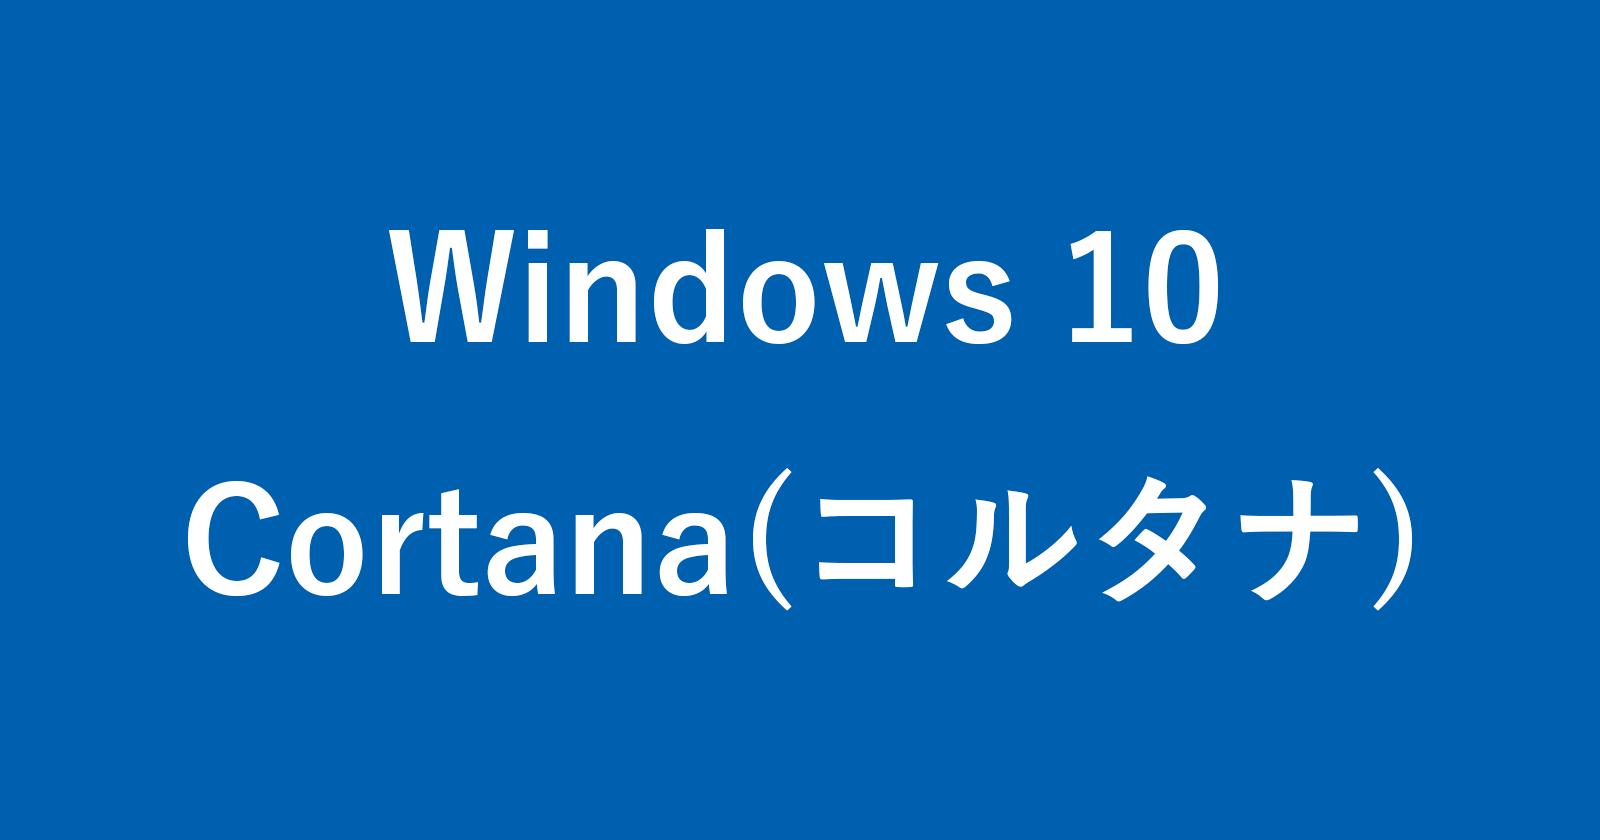 windows 10 cortana